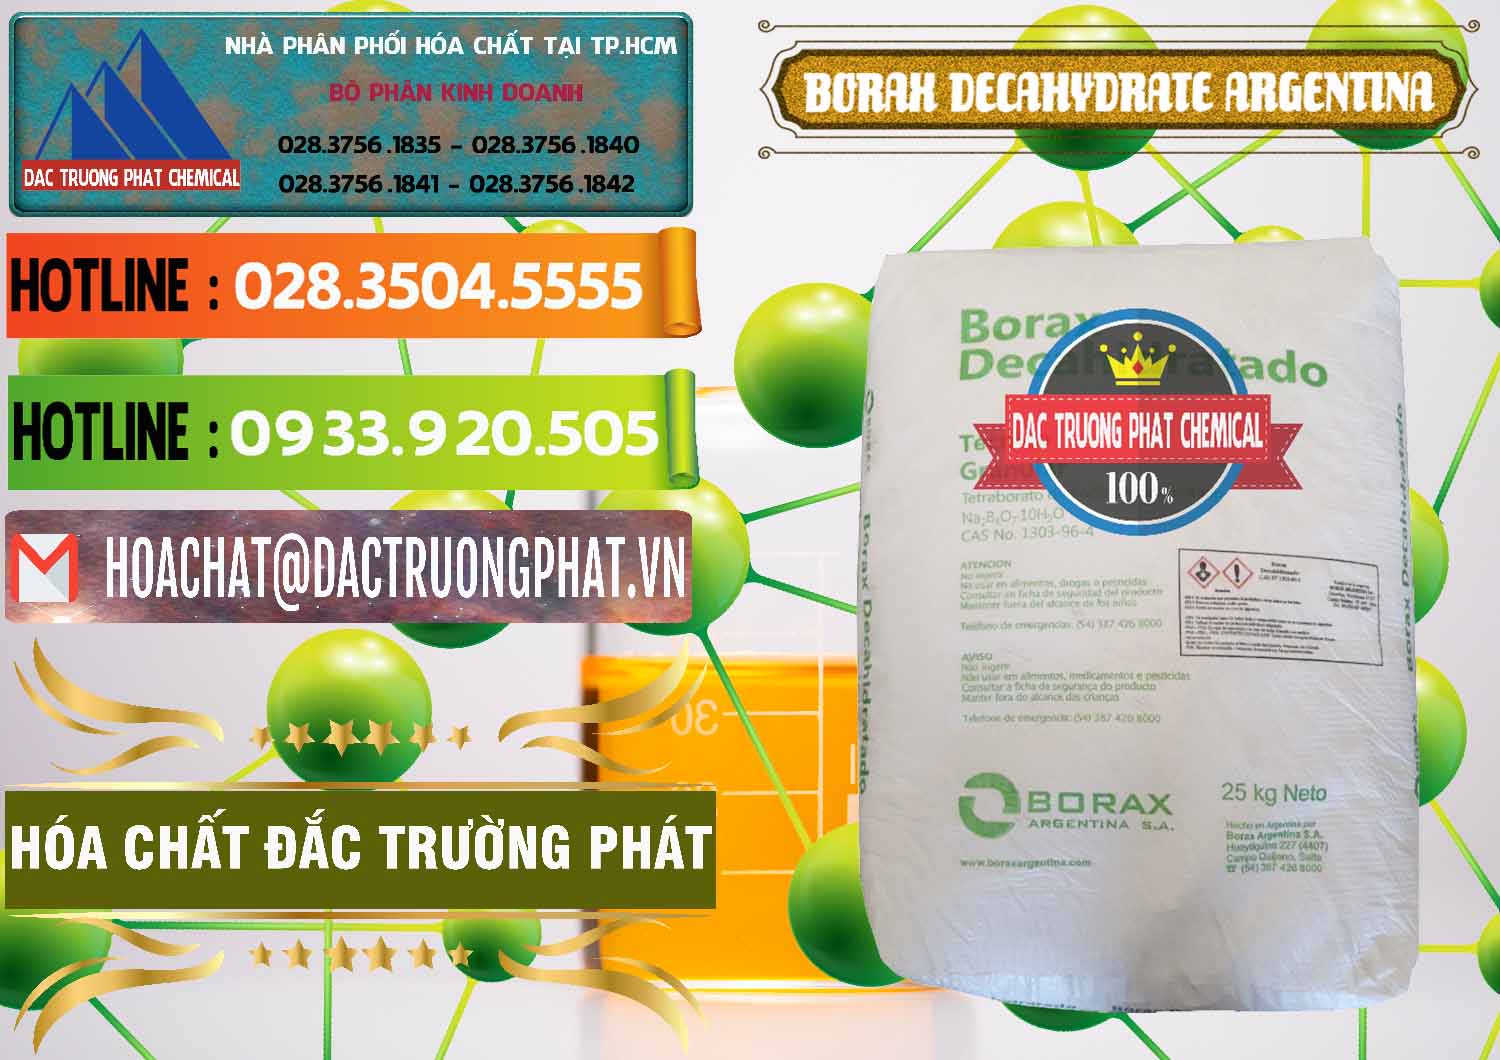 Chuyên bán ( cung cấp ) Borax Decahydrate Argentina - 0446 - Chuyên phân phối ( cung cấp ) hóa chất tại TP.HCM - cungcaphoachat.com.vn